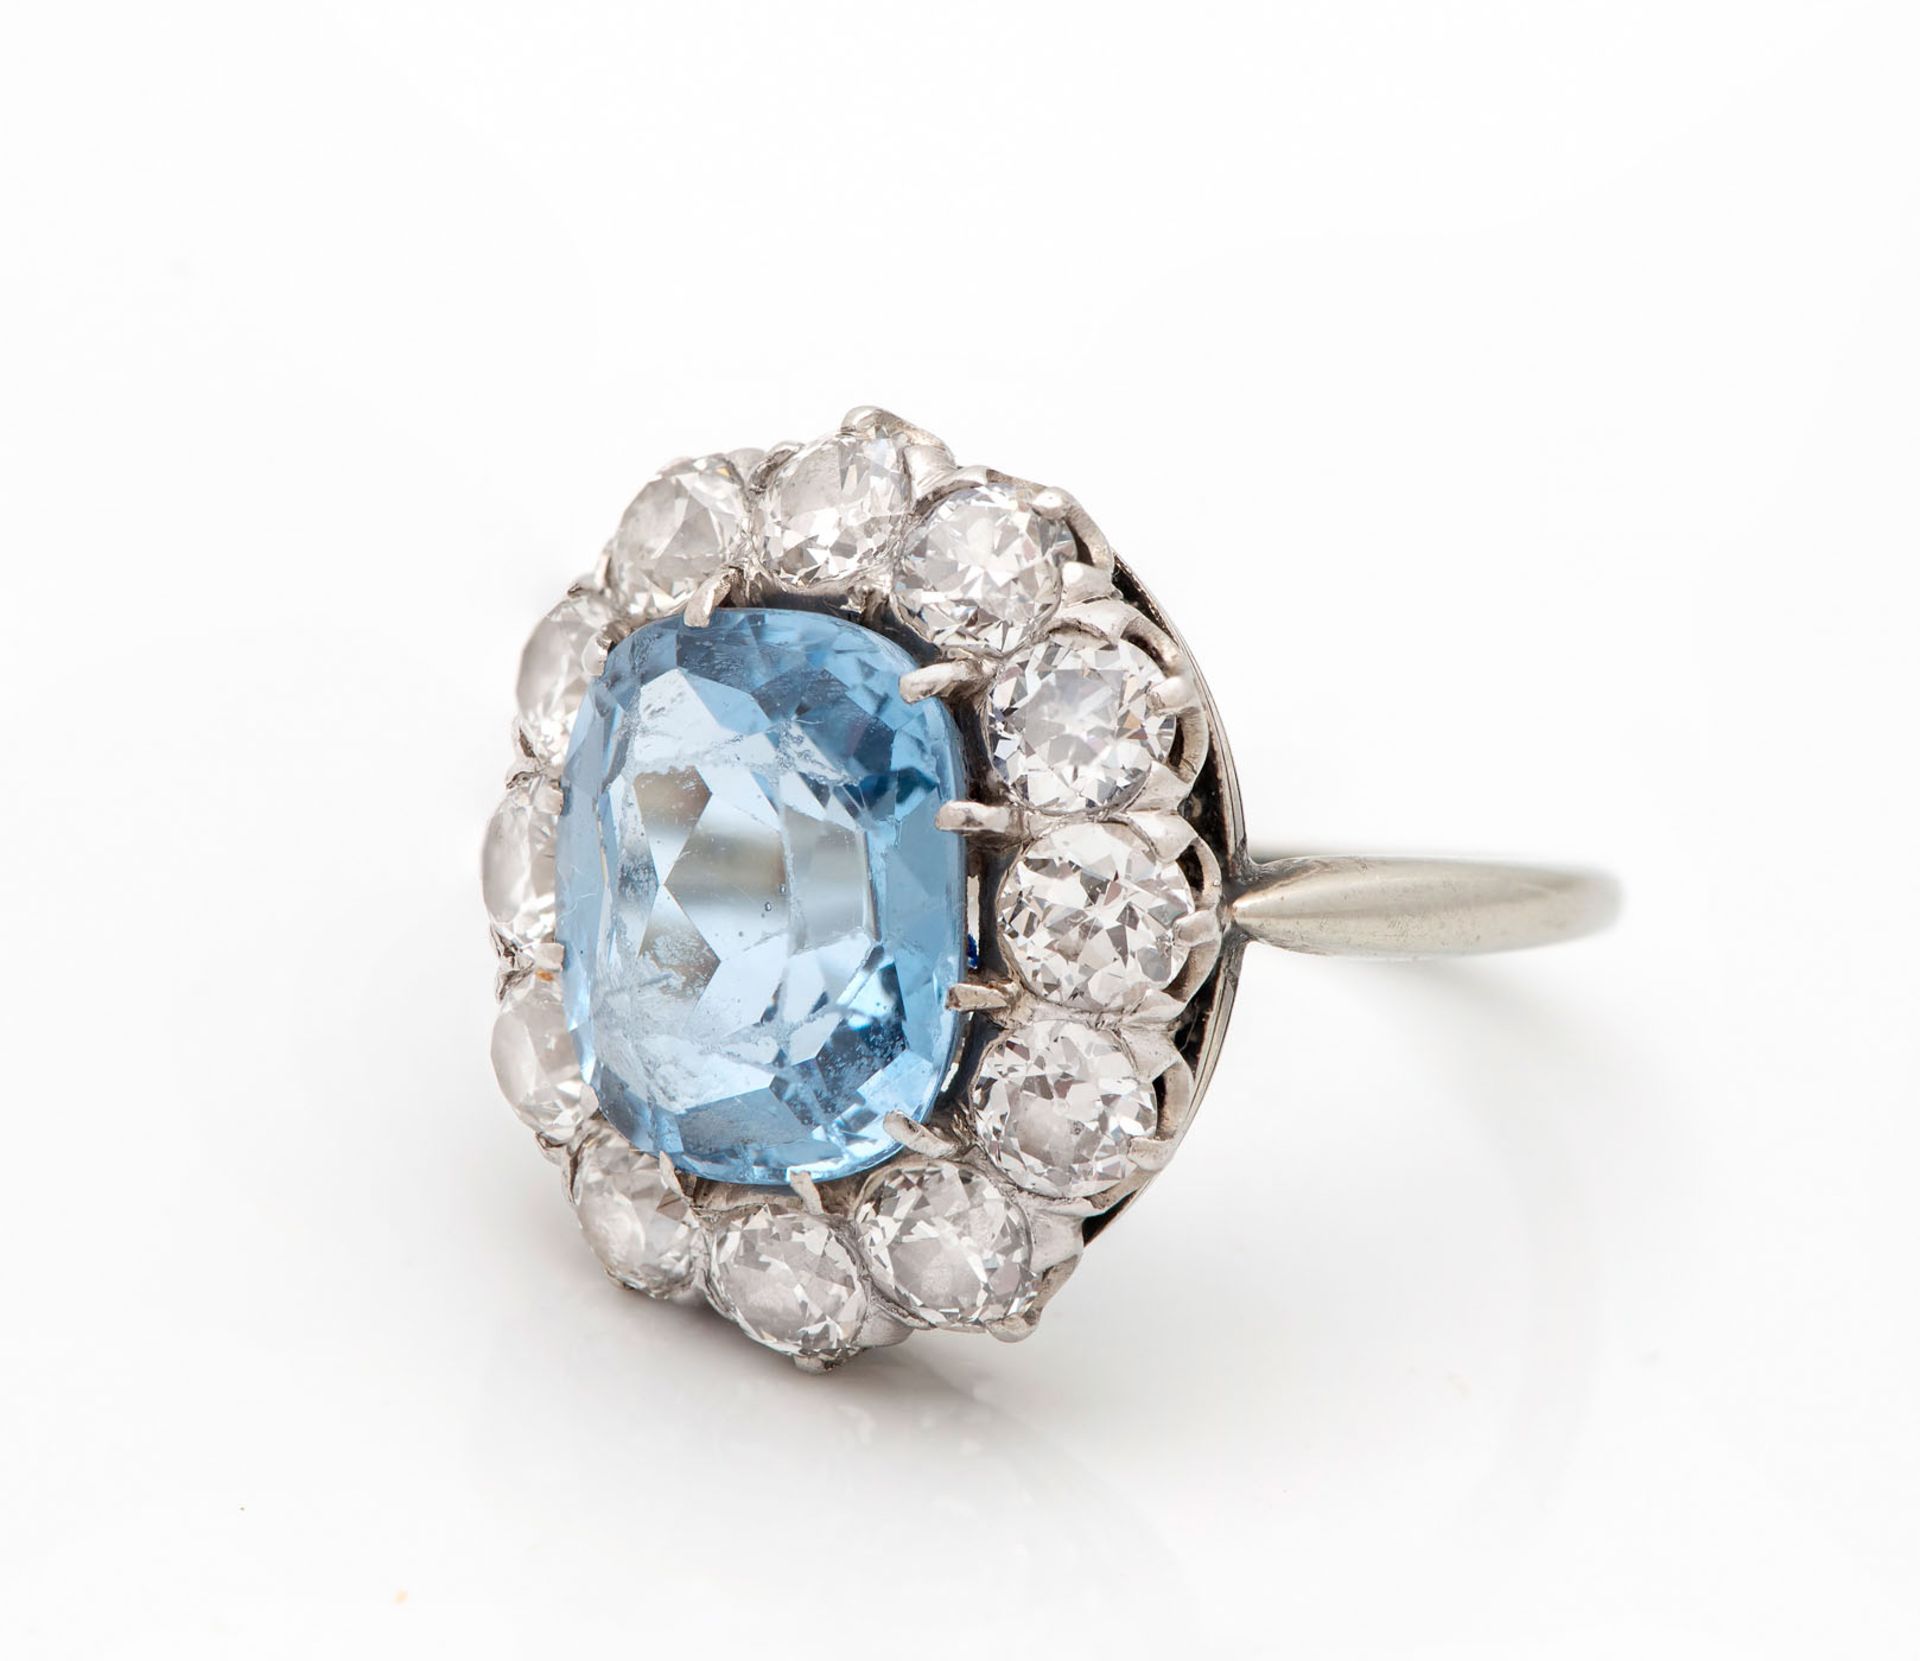 A Fine Edwardian 18K White Gold Diamond and Aquamarine Ring - Image 3 of 4